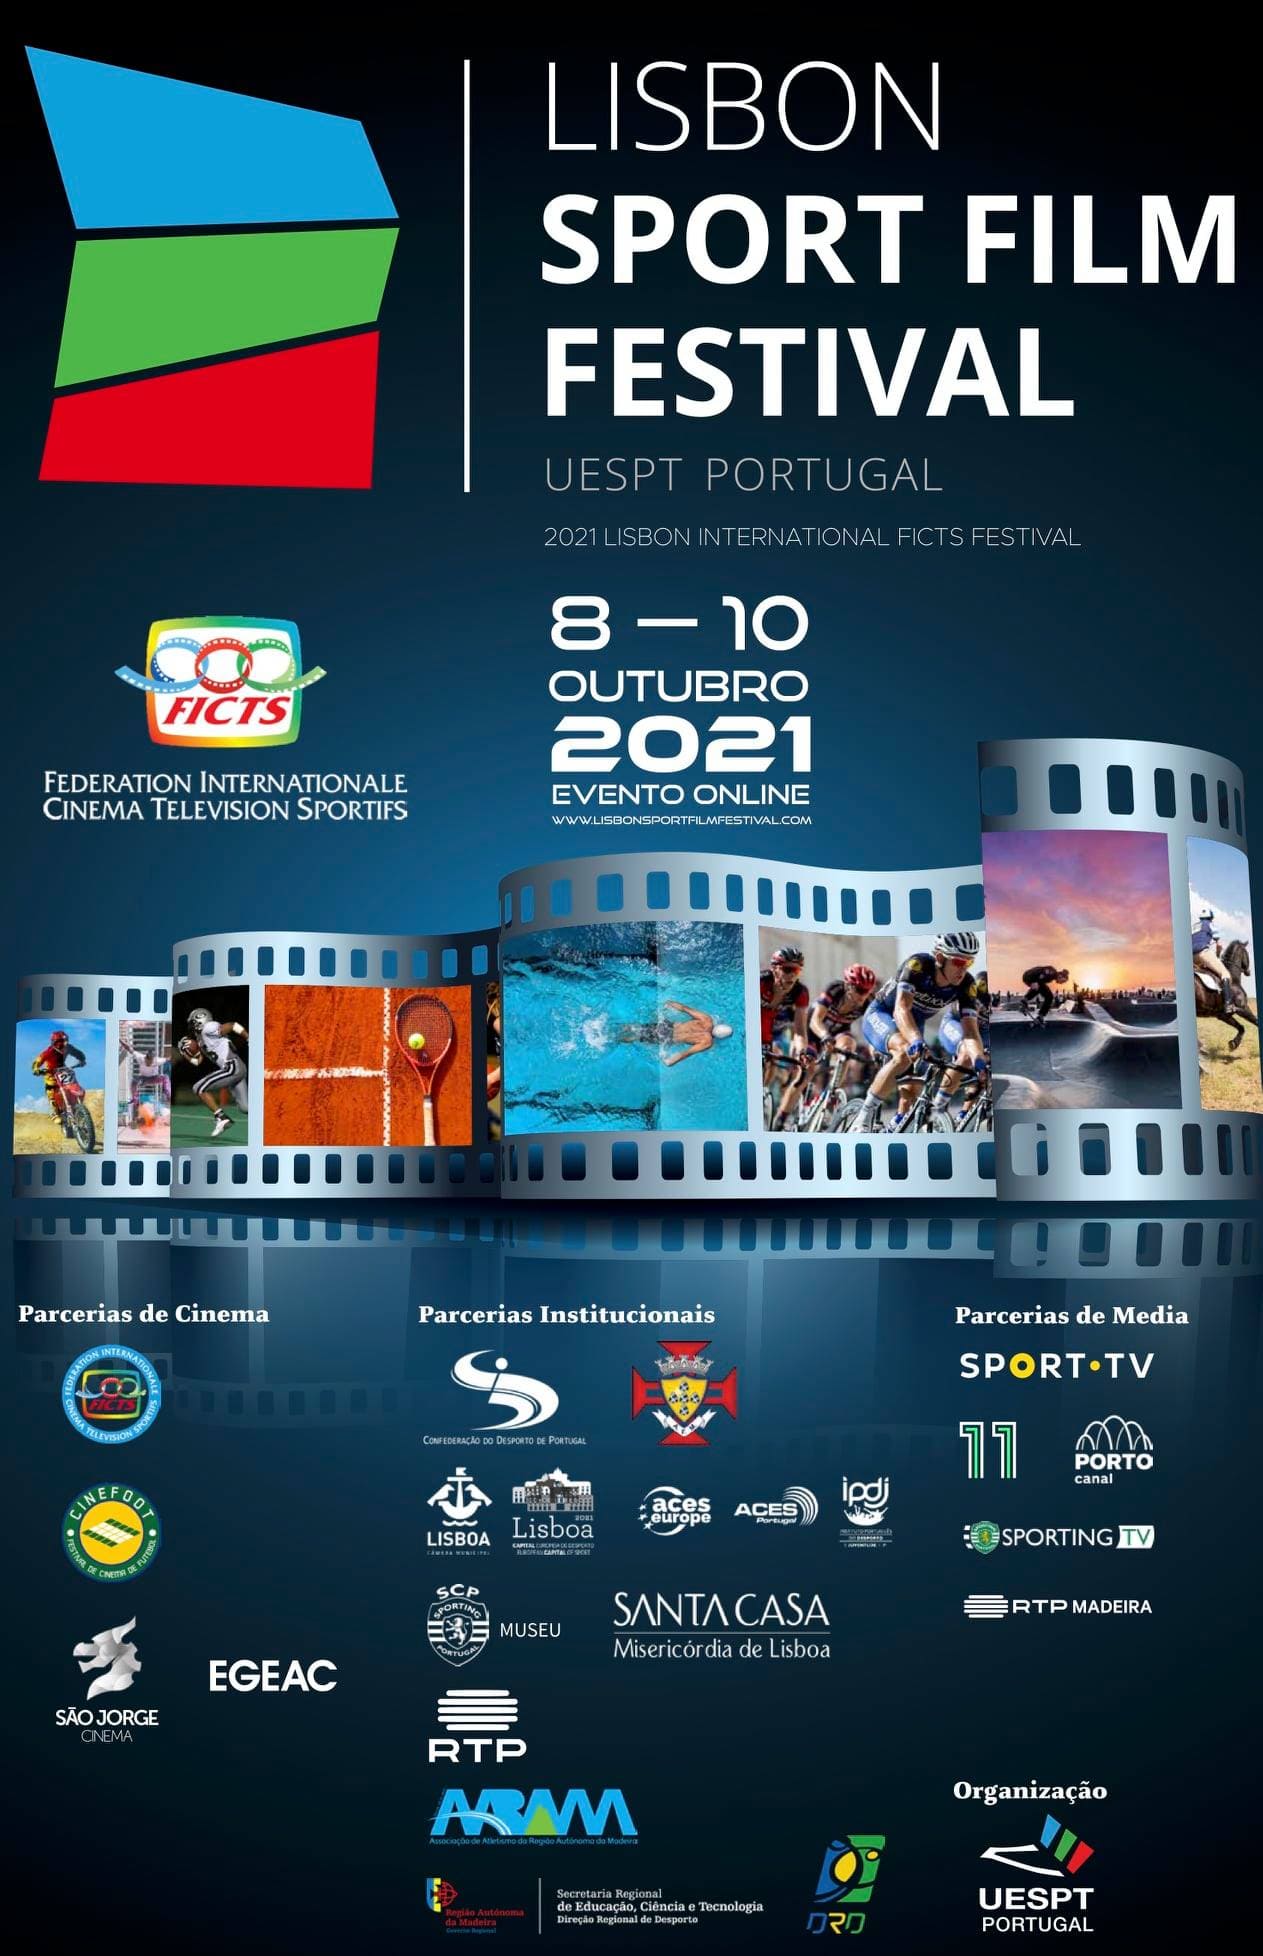 Lisbon Sport Film Festiva